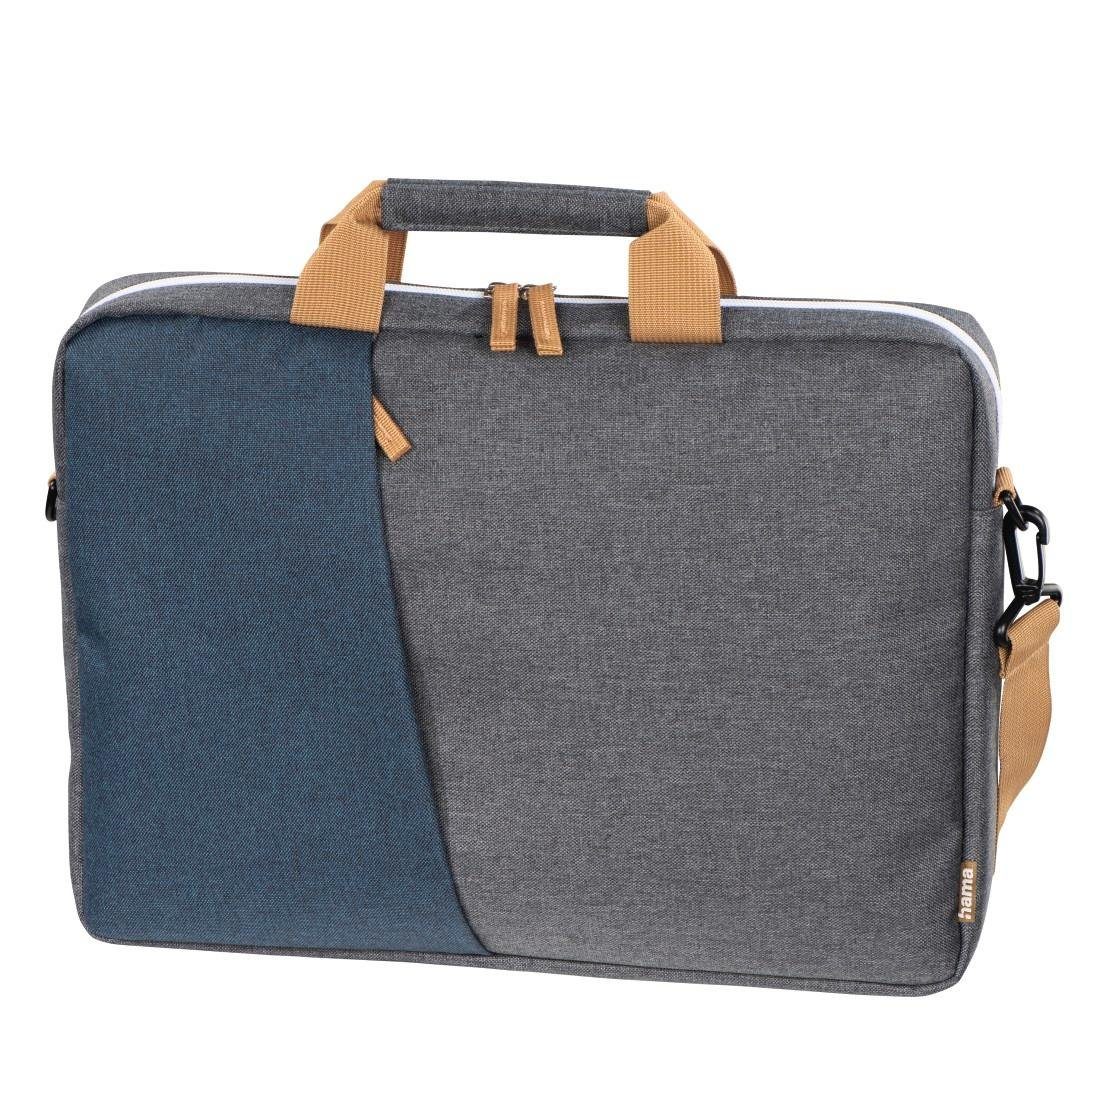 bis Laptoptasche Laptop-Tasche Marineblau/Dunkelgrau (15,6), Hama "Florenz", cm 40